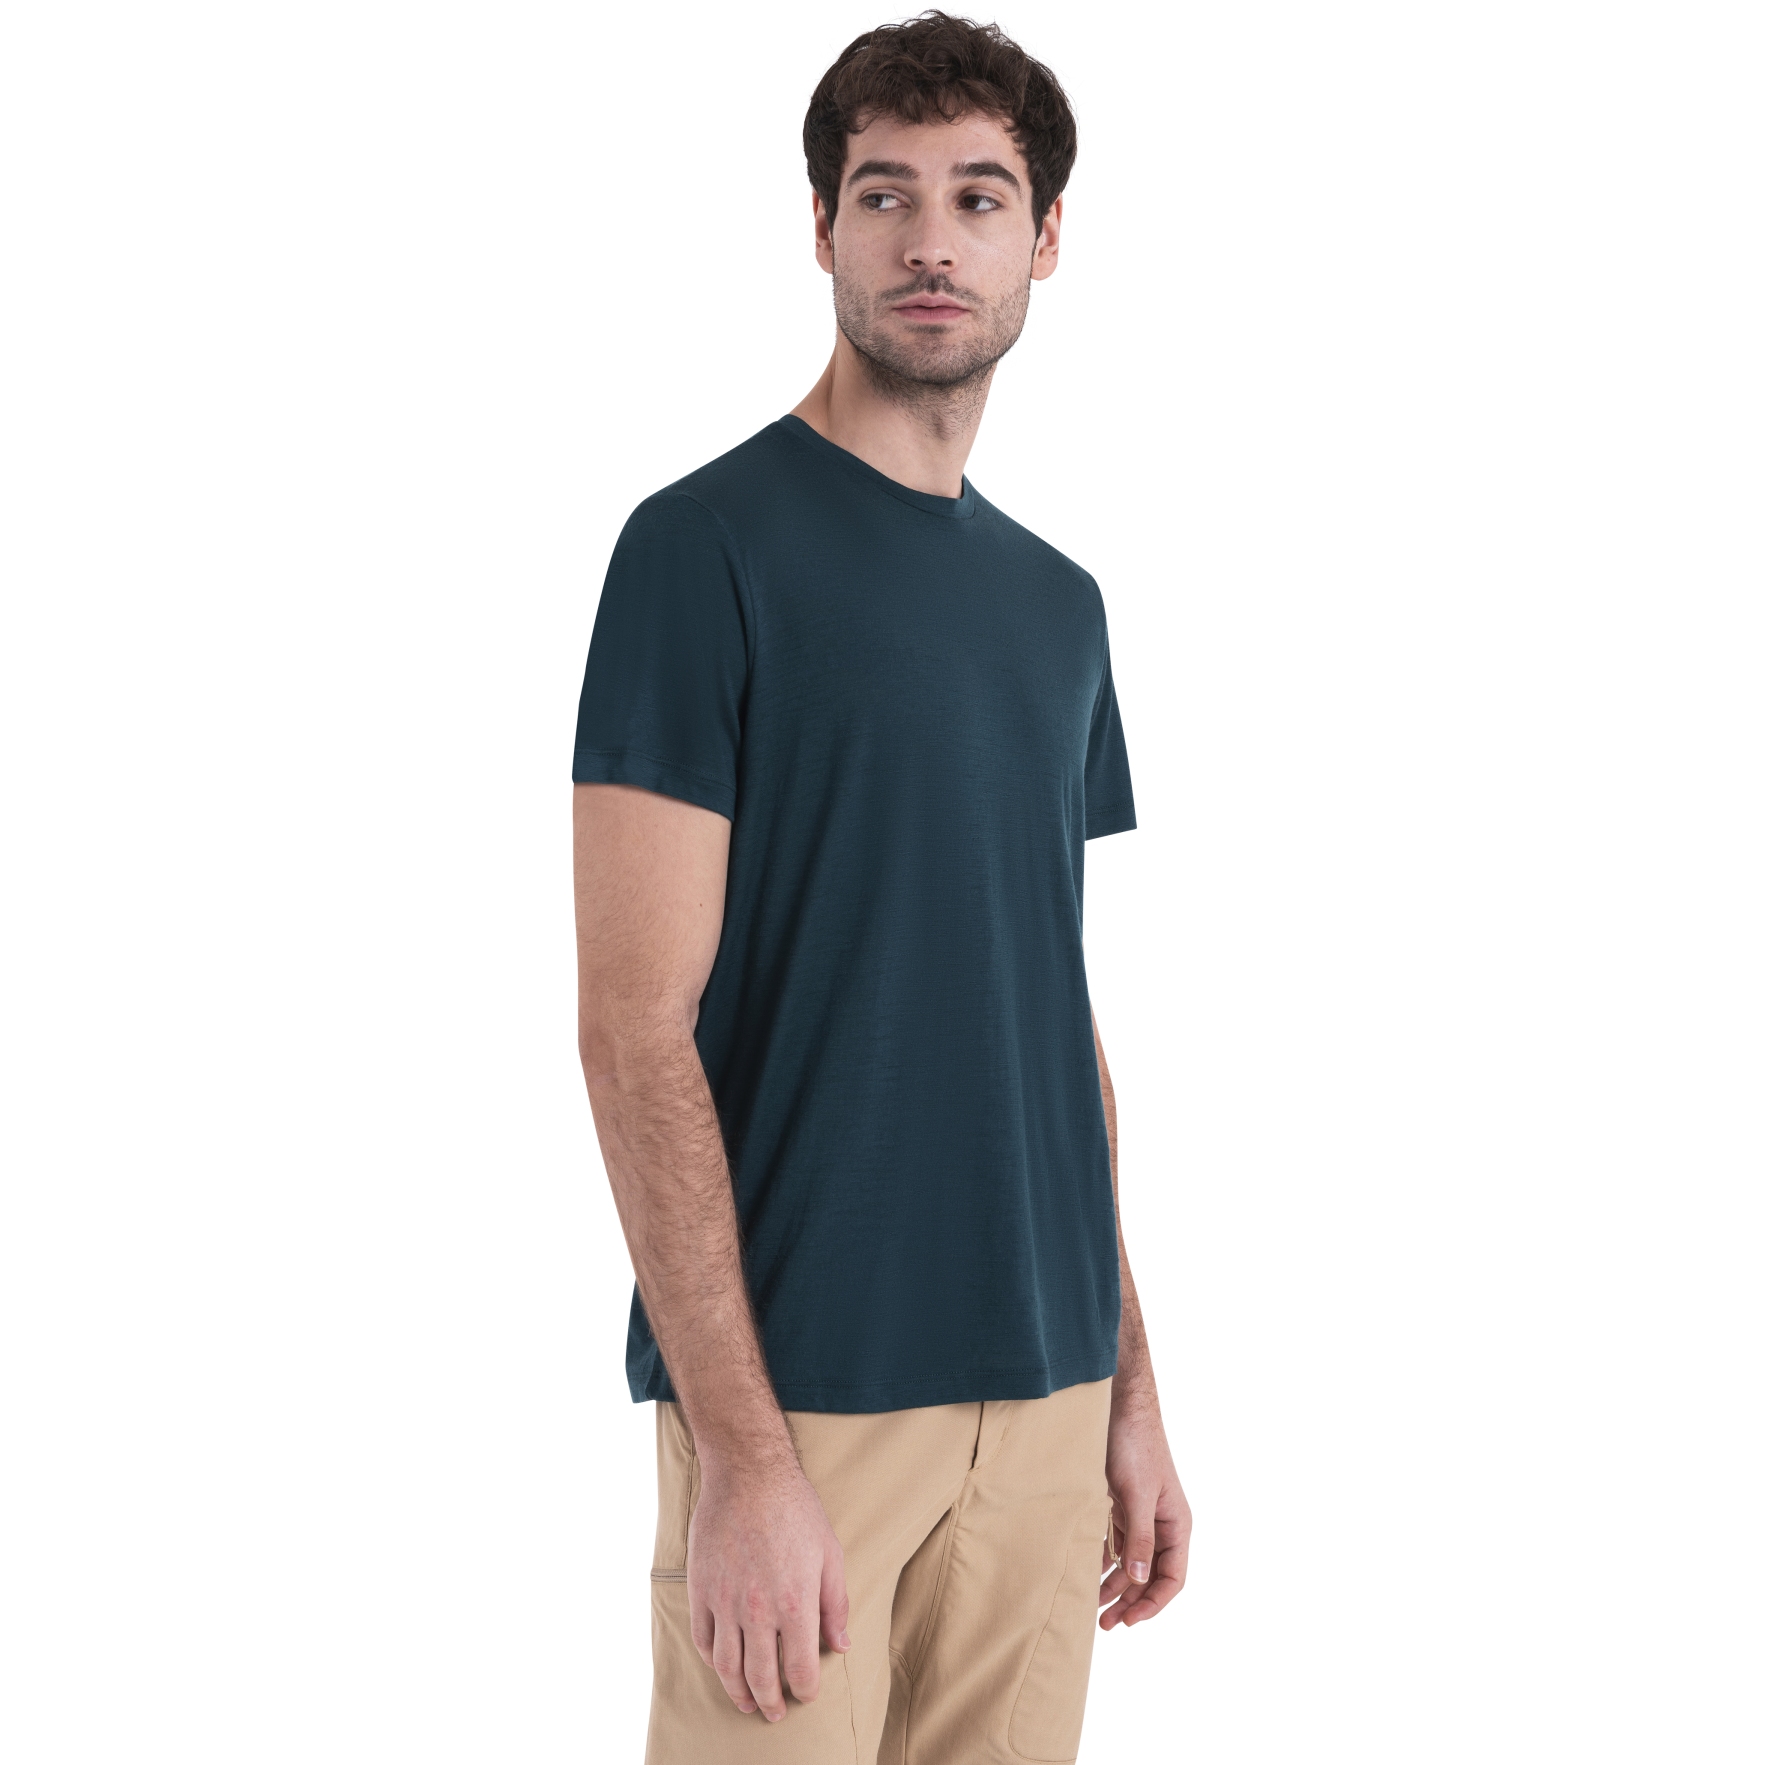 Produktbild von Icebreaker Merino 150 Tech Lite III T-Shirt Herren - Fathom Green